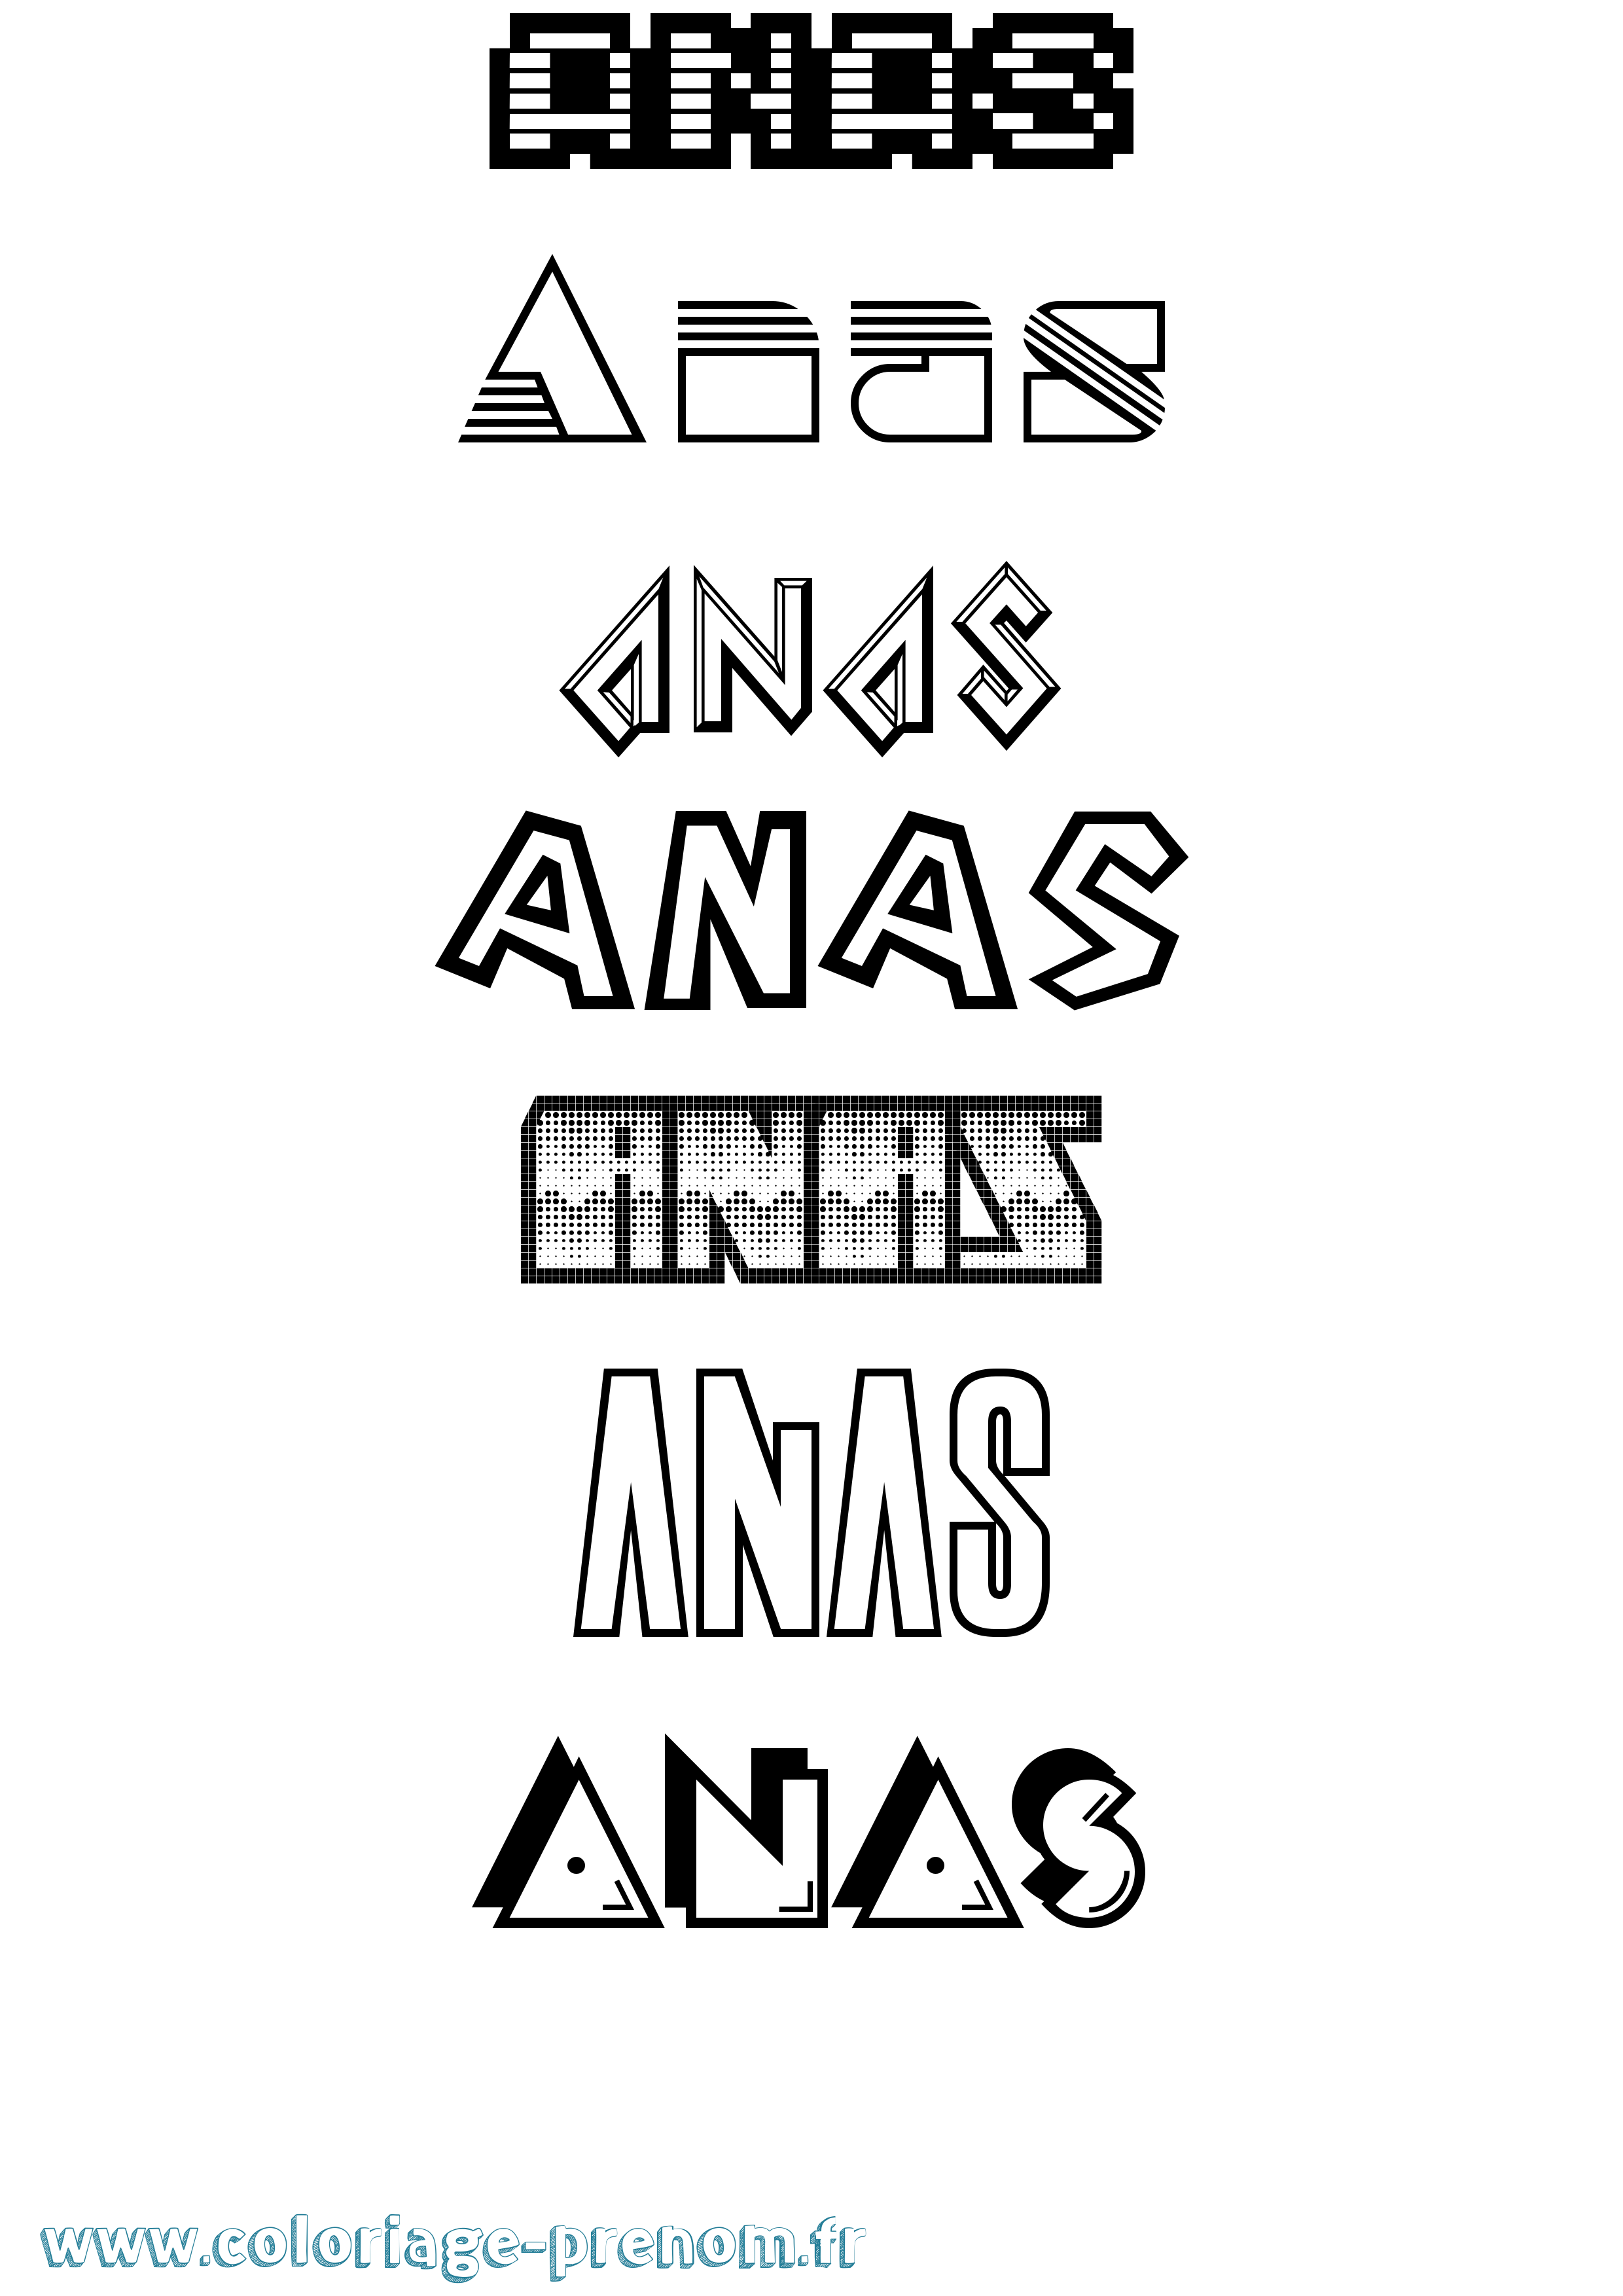 Coloriage prénom Anas